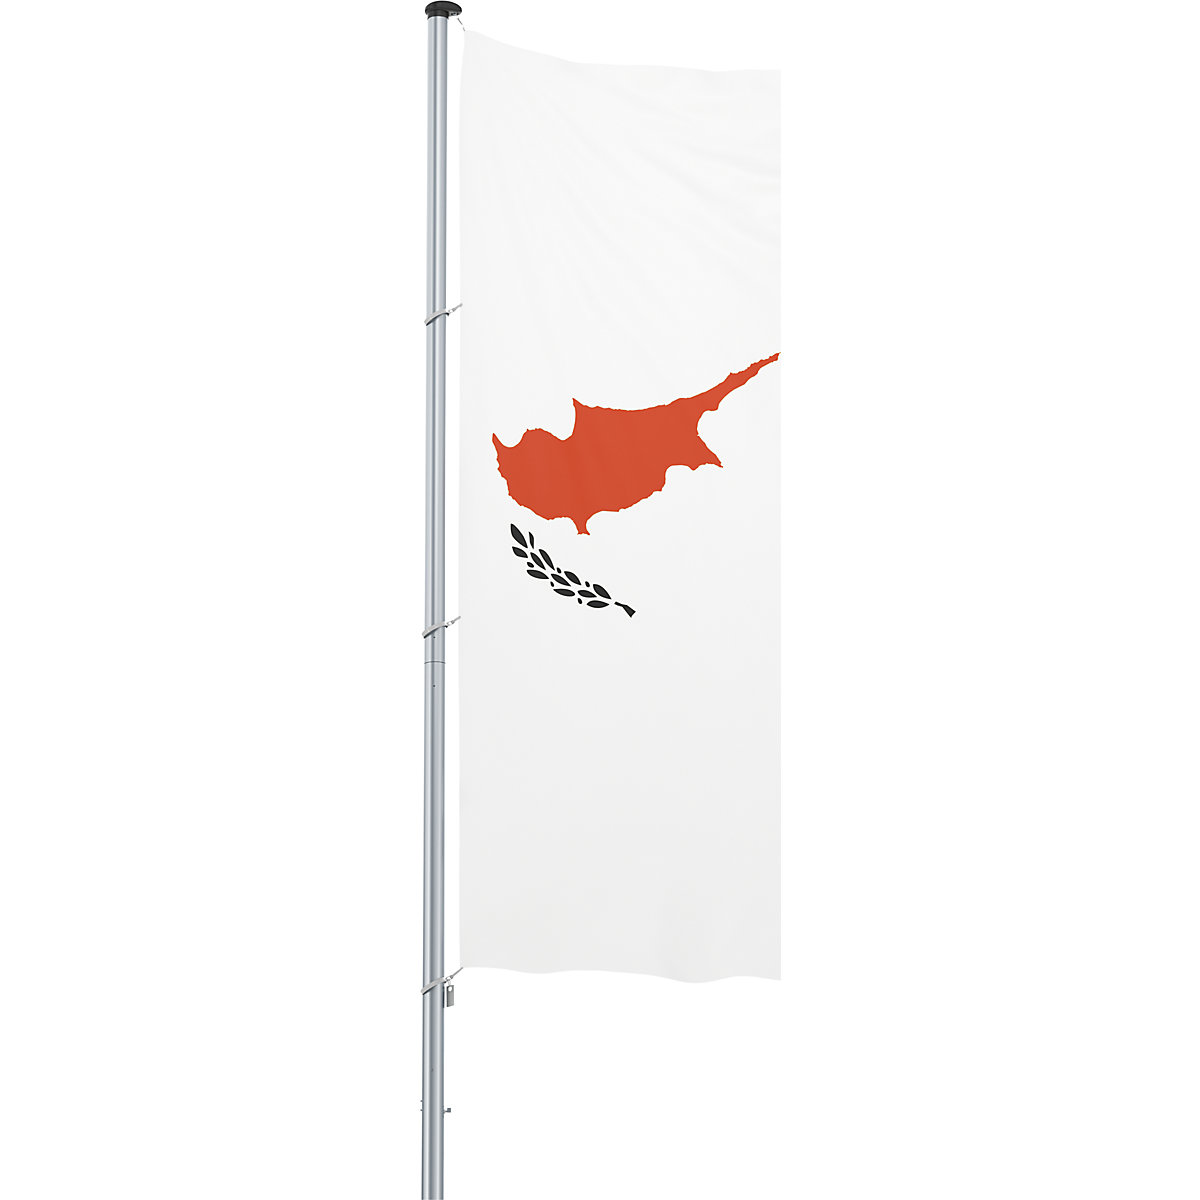 Vlajka pro vodorovné zavěšení/vlajka země – Mannus, formát 1,2 x 3 m, Kypr-19